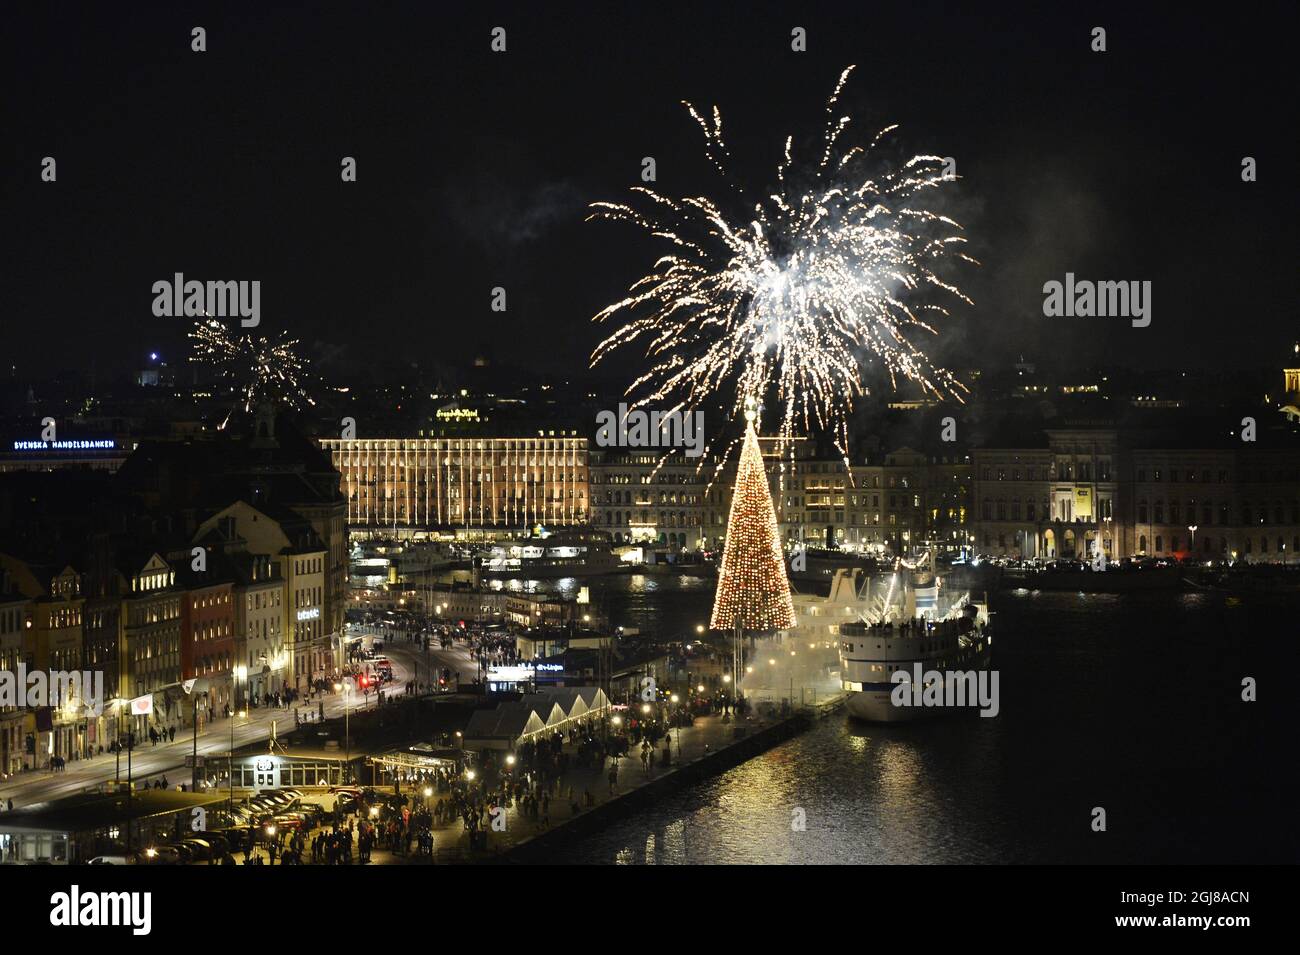 STOCCOLMA 20131231 Capodanno festeggiamenti con fuochi d'artificio sulla via Skeppsbron nel centro di Stoccolma a mezzanotte del 31 dicembre 2013. Foto Anders Wiklund / TT code 10040 Foto Stock